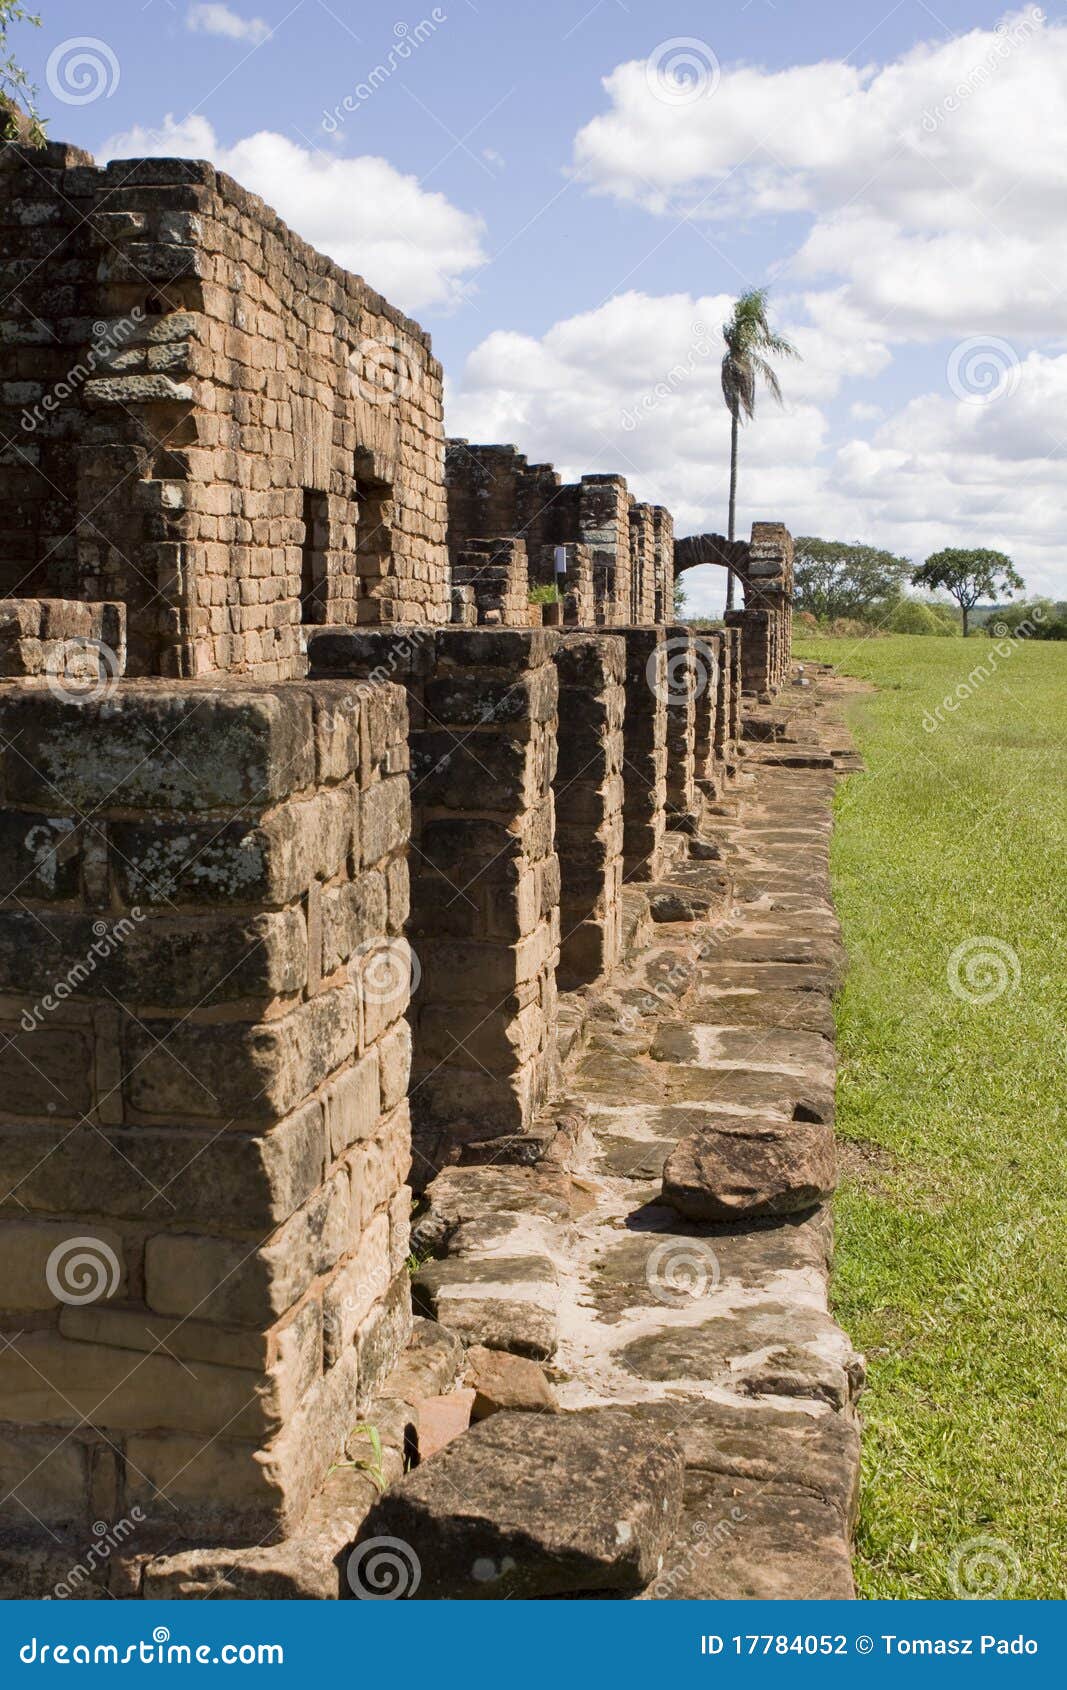 jesuit ruins in trinidad